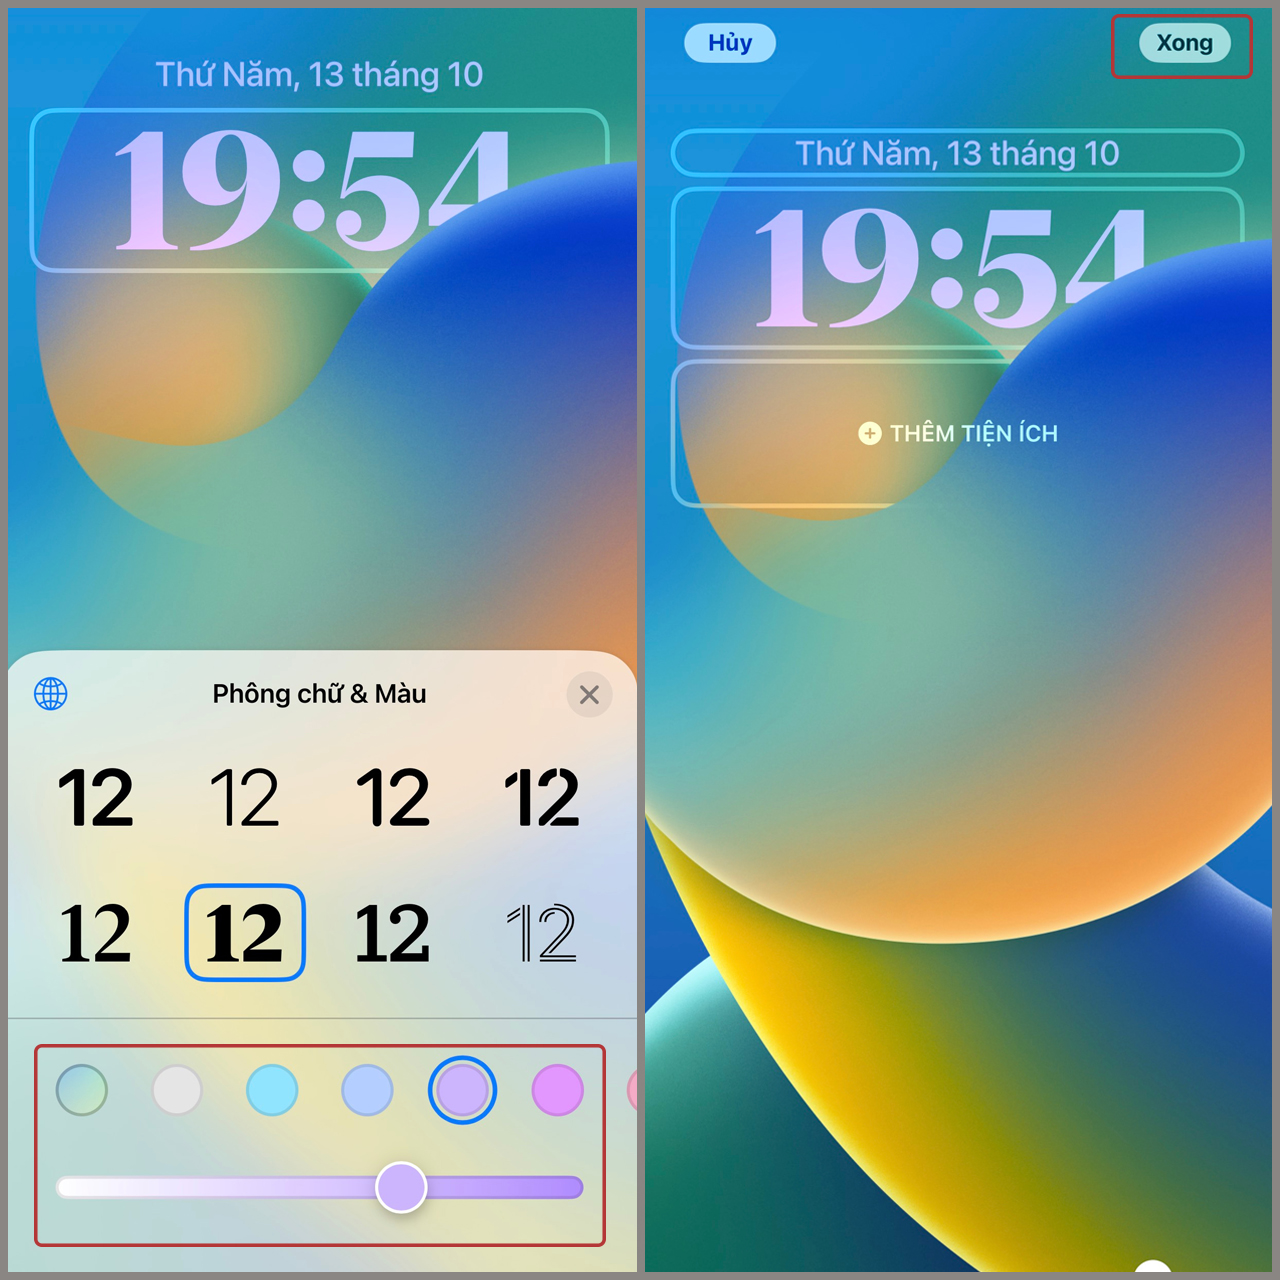 Từ các font chữ sành điệu đến kiểu chữ đơn giản và hiện đại, iOS 16 cho phép bạn tùy chỉnh đồng hồ theo cách của riêng mình. Điểm đặc biệt của bản cập nhật là màn hình luôn thay đổi theo thời gian thực, cho bạn một trải nghiệm độc đáo và sinh động.